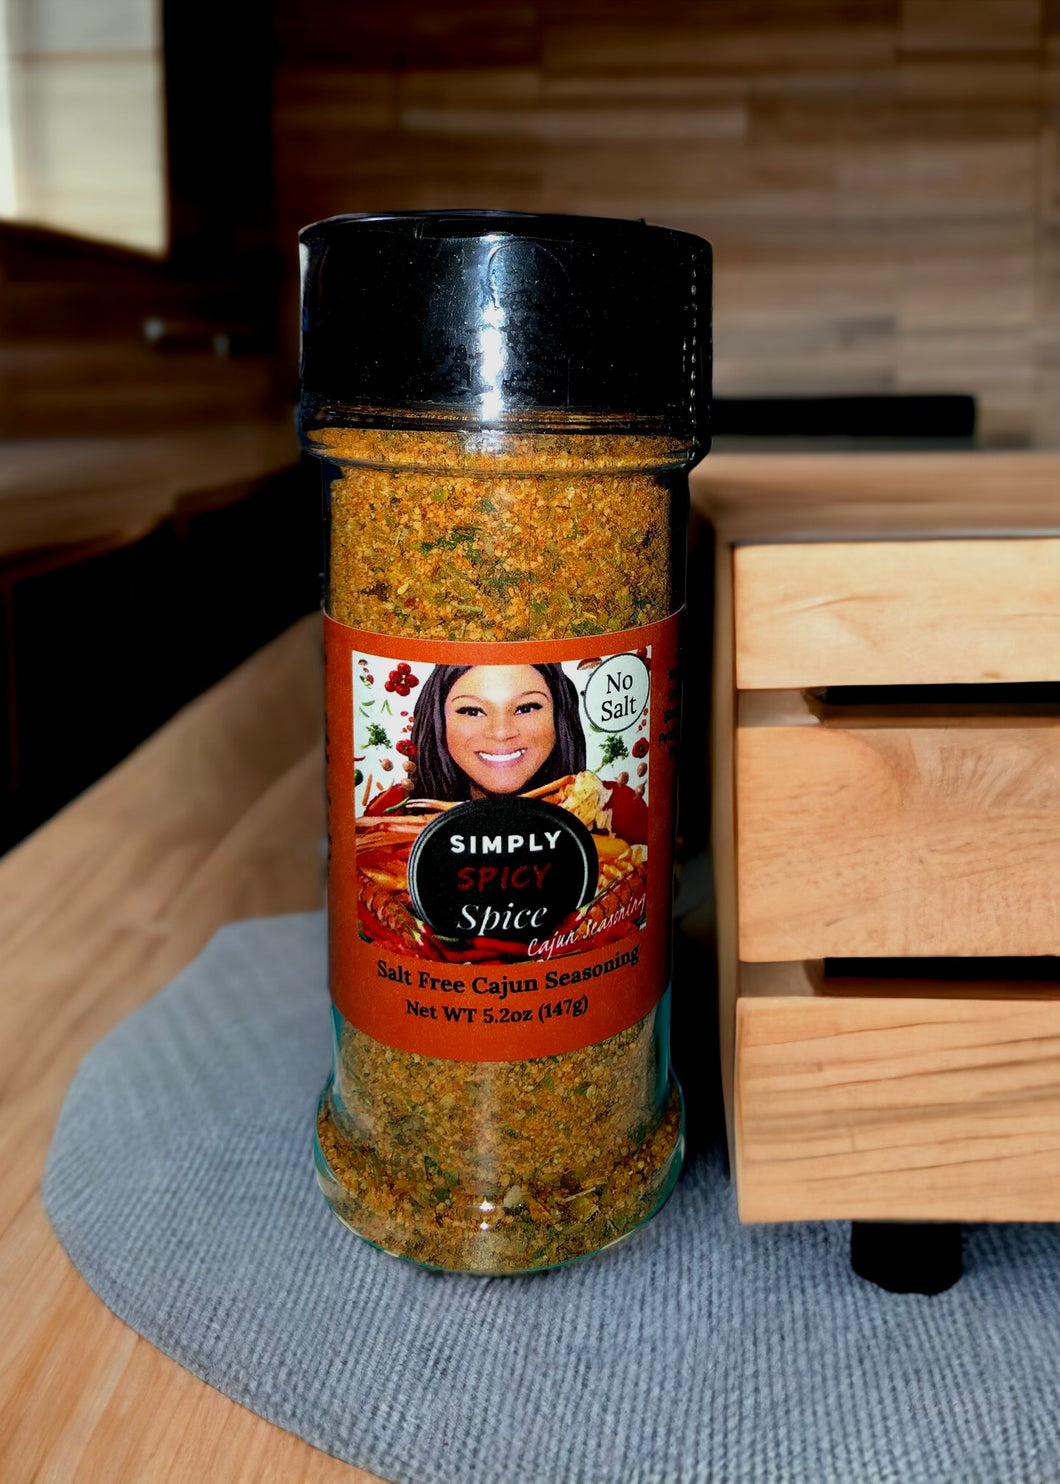 Cajun spices without salt